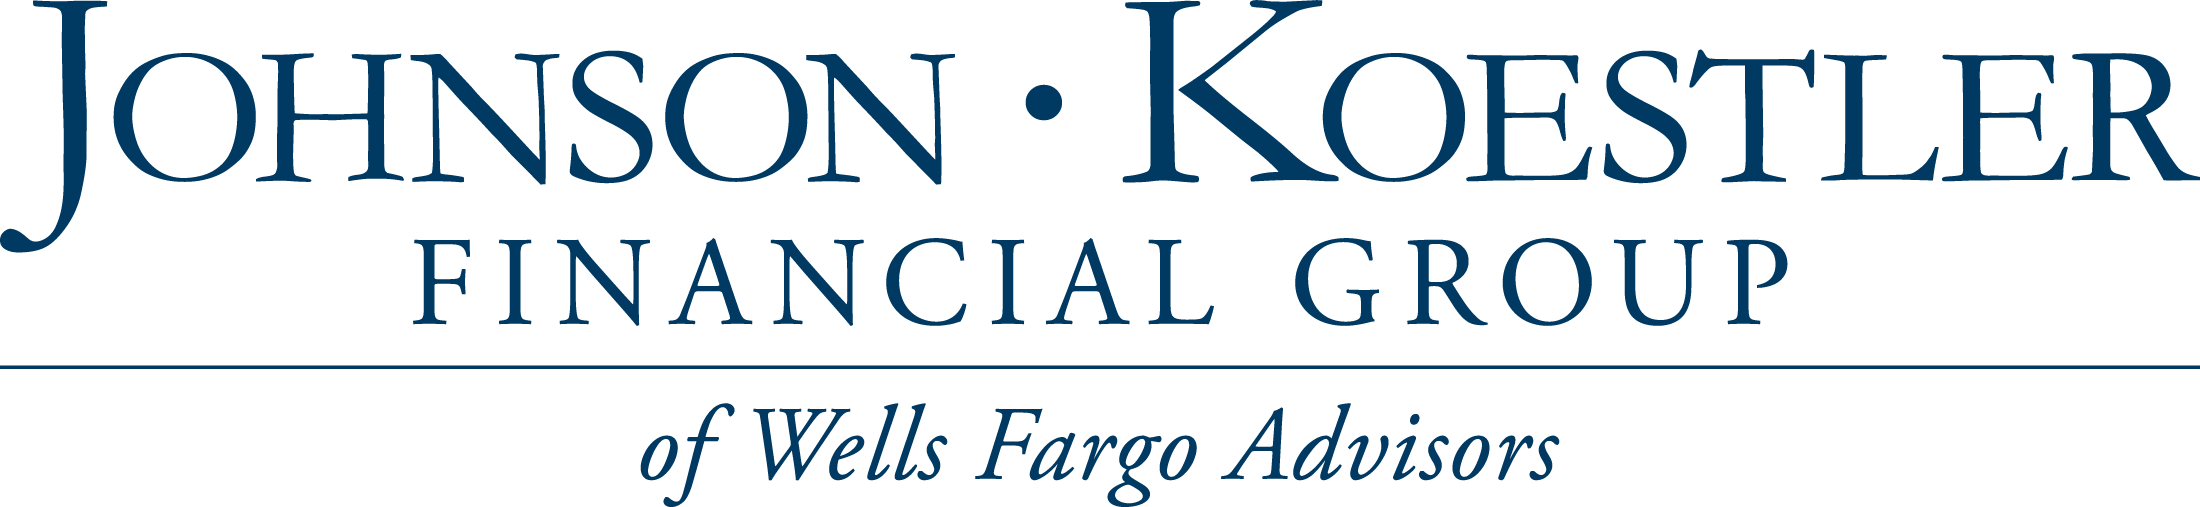 Johnson-Koestler Financial Group